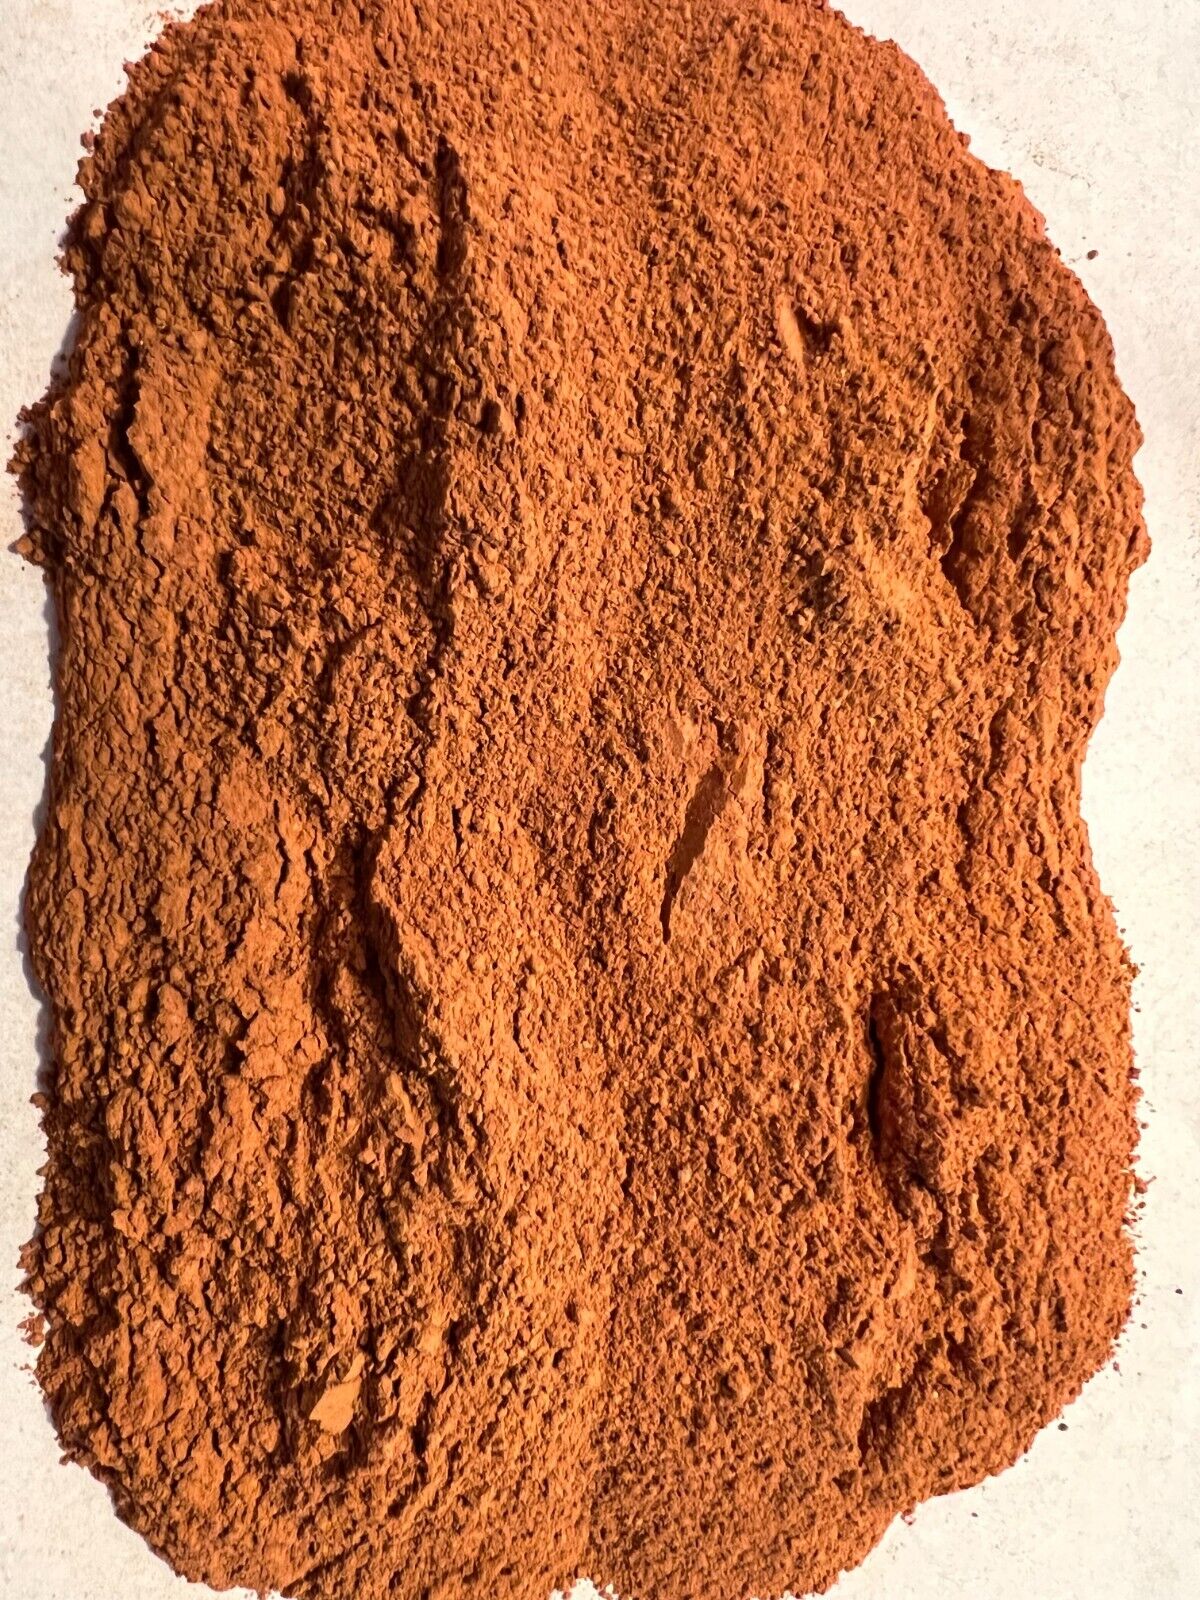 Ultra Fine Red Brick Dust 1/4 Pound